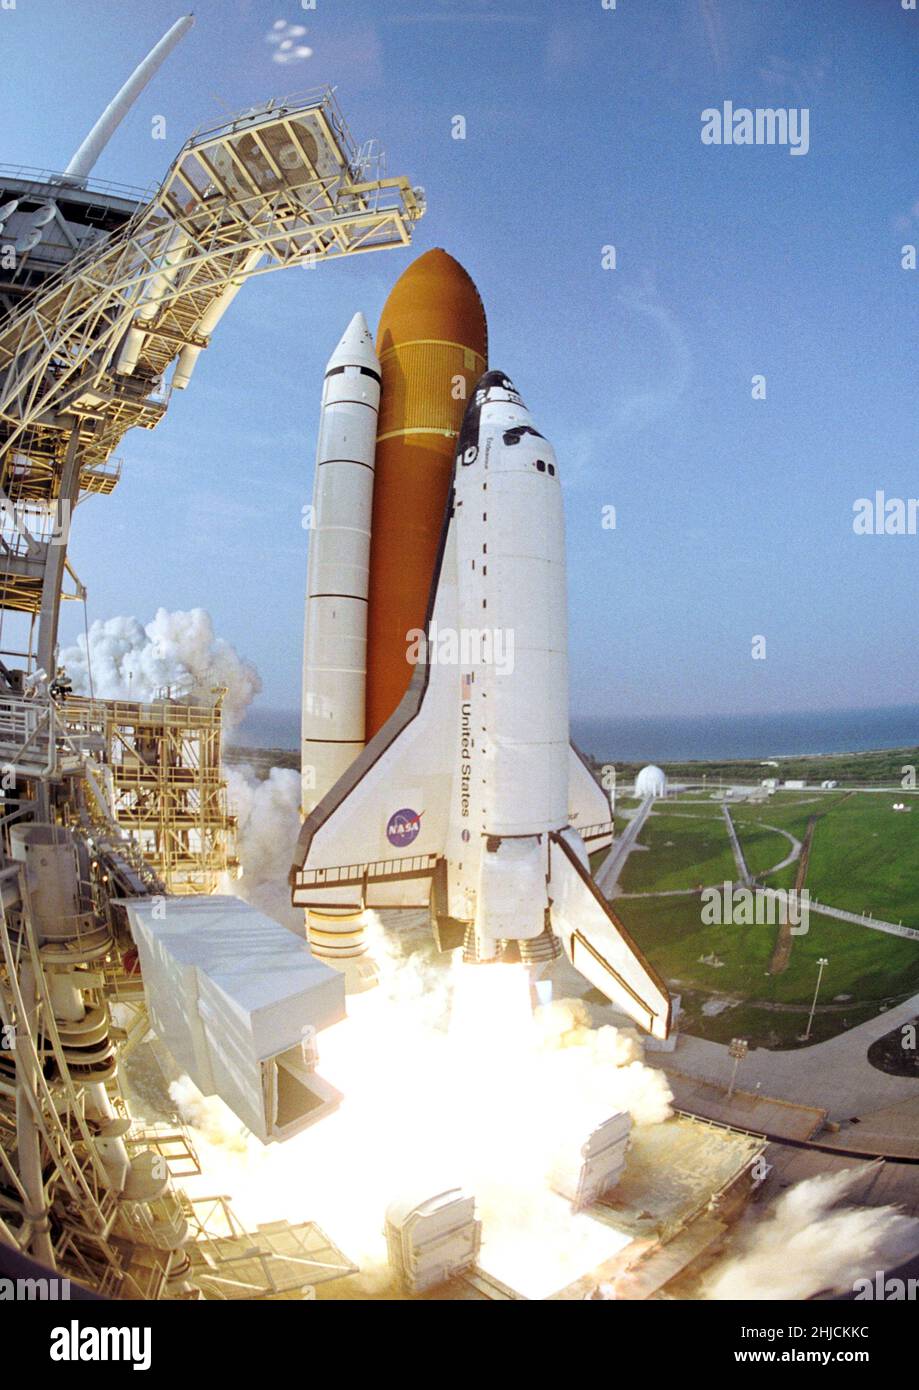 Lo Space Shuttle Endeavour si alza dal pad di lancio del Kennedy Space Center 39A alle 6:36 (EDT) il 8 agosto 2007. A bordo ci sono gli equipaggi della STS-118: Gli astronauti Scott Kelly, il comandante, Charlie Hobaugh, il pilota e gli specialisti della missione Tracy Caldwell, Rick Mastracchio, Dave Williams, Barbara R. Morgan e Alvin Drew dell'Agenzia spaziale Canadese. Endeavour si collegò con la Stazione spaziale Internazionale due giorni dopo, e restituendo l'equipaggio in sicurezza sulla Terra il 21 agosto. Foto Stock